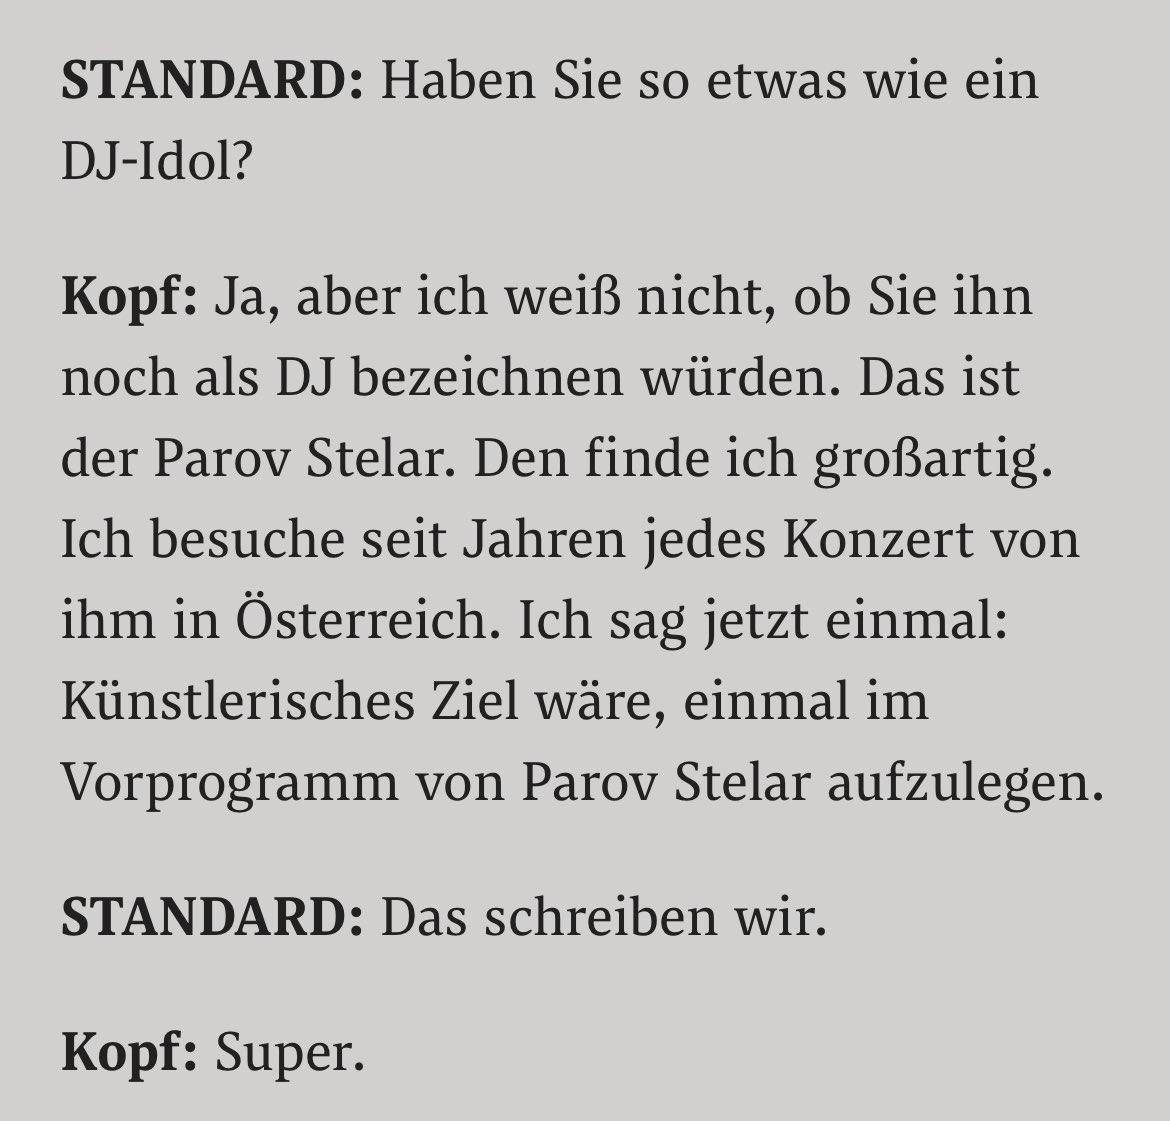 Der AMS-Chef hat als offiziell zertifizierter DJ seinen ersten Song veröffentlicht - und im STANDARD ein Bewerbungs-Inserat aufgegeben. Sehr hübsches Interview: derstandard.at/story/30000002…